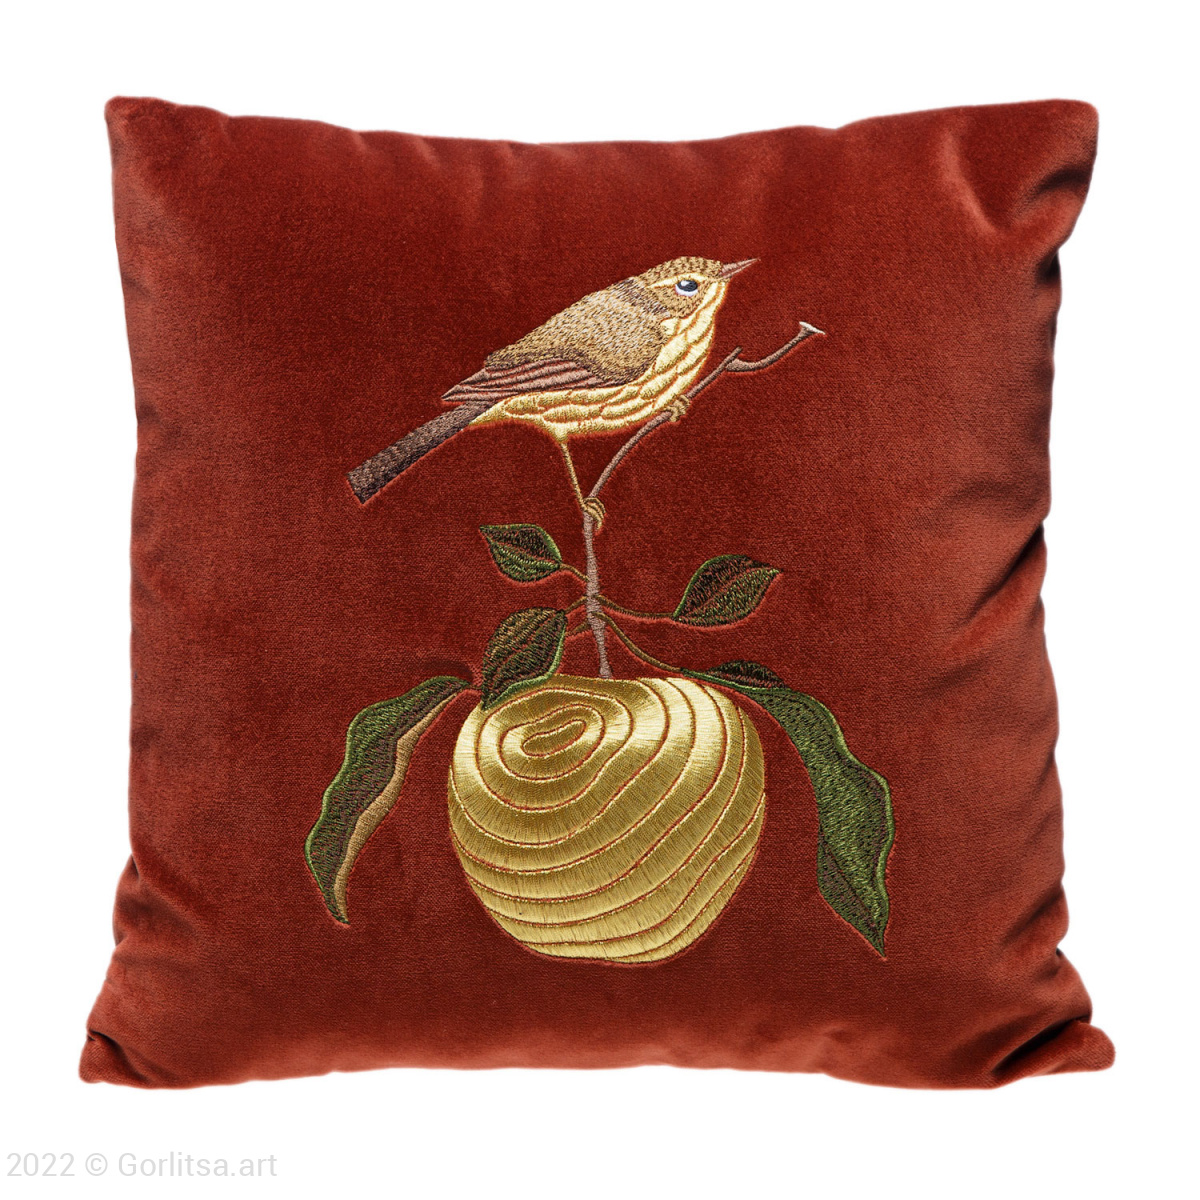 Подушка бархатная «Птичка на яблоке» 62019-4-1, терракотовый / золото, шёлк бархат Никифоровская мануфактура